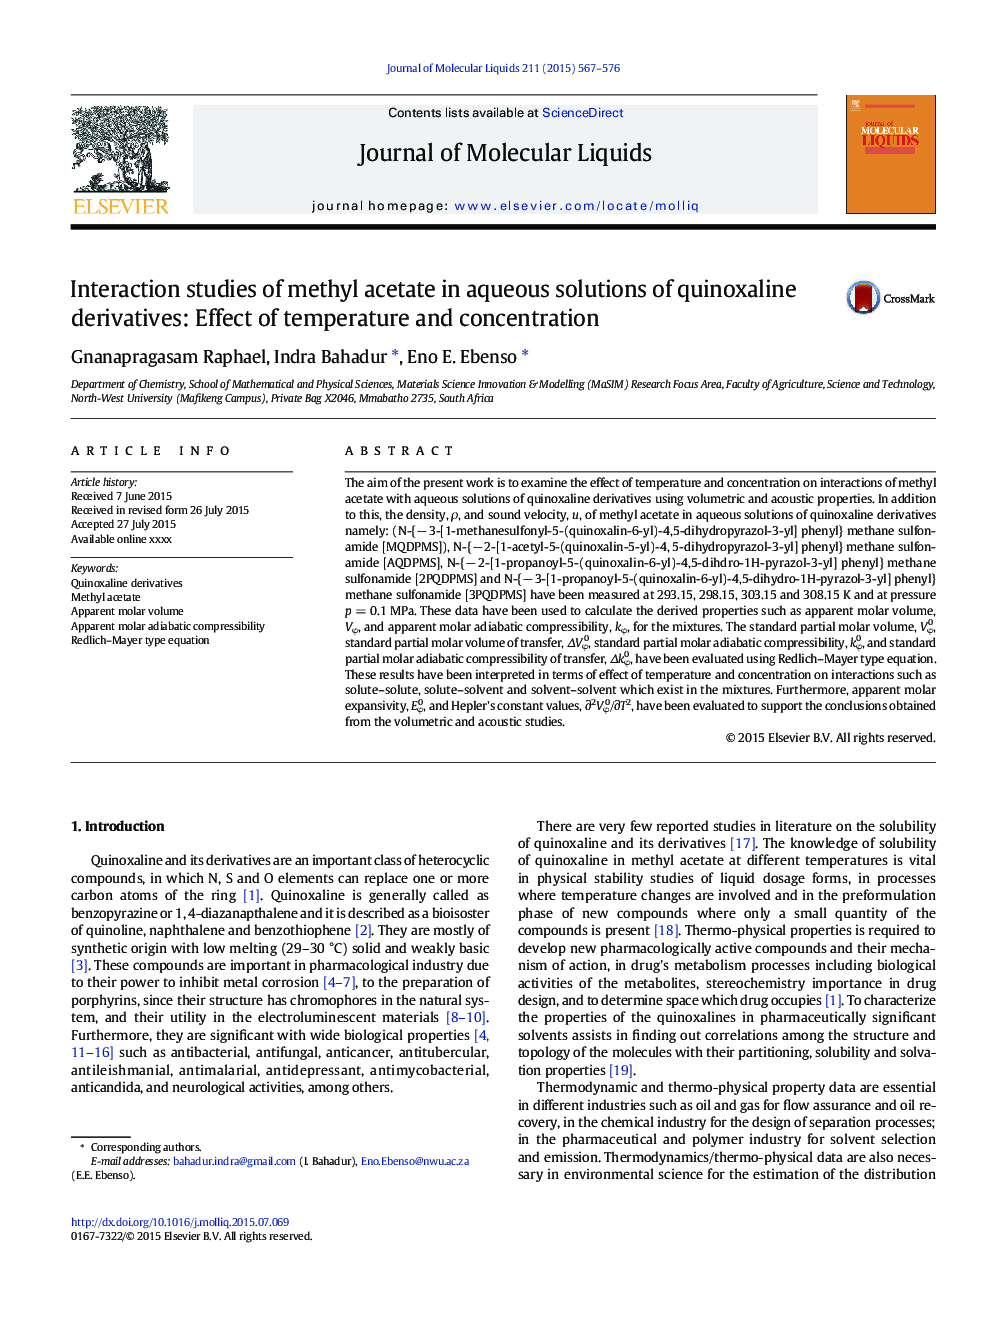 مطالعات تعامل متیل استات در محلول های آبی مشتقات کینوکسالیان: اثر دما و غلظت 